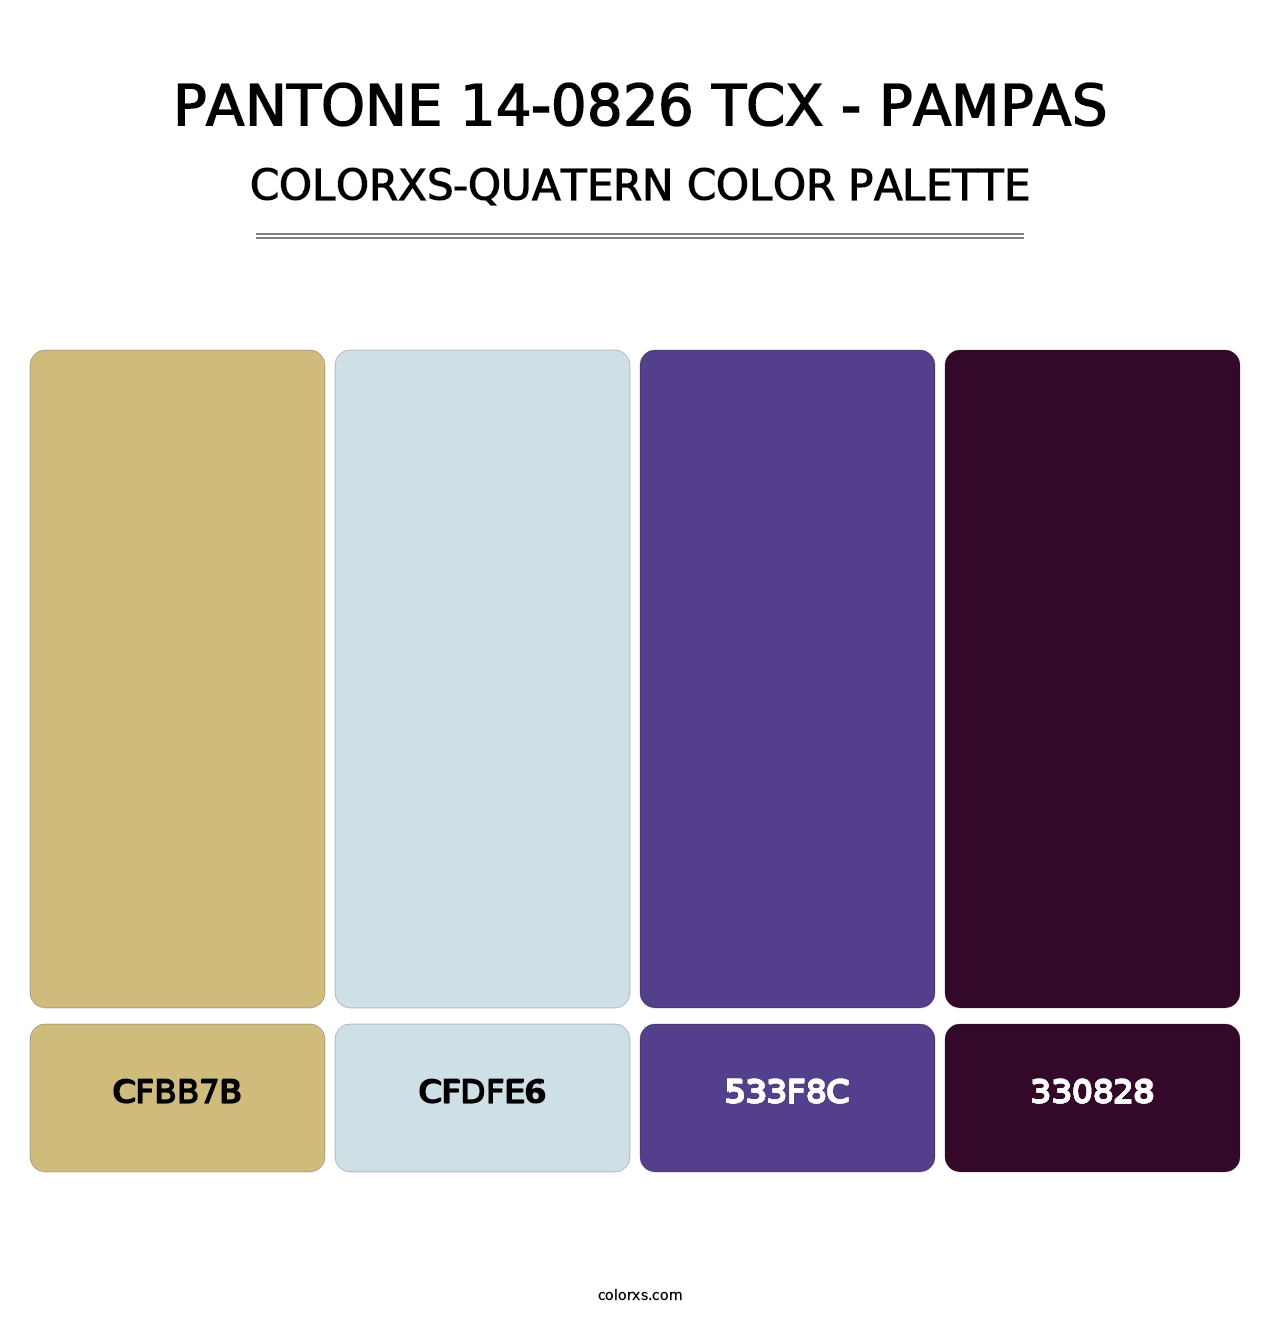 PANTONE 14-0826 TCX - Pampas - Colorxs Quatern Palette